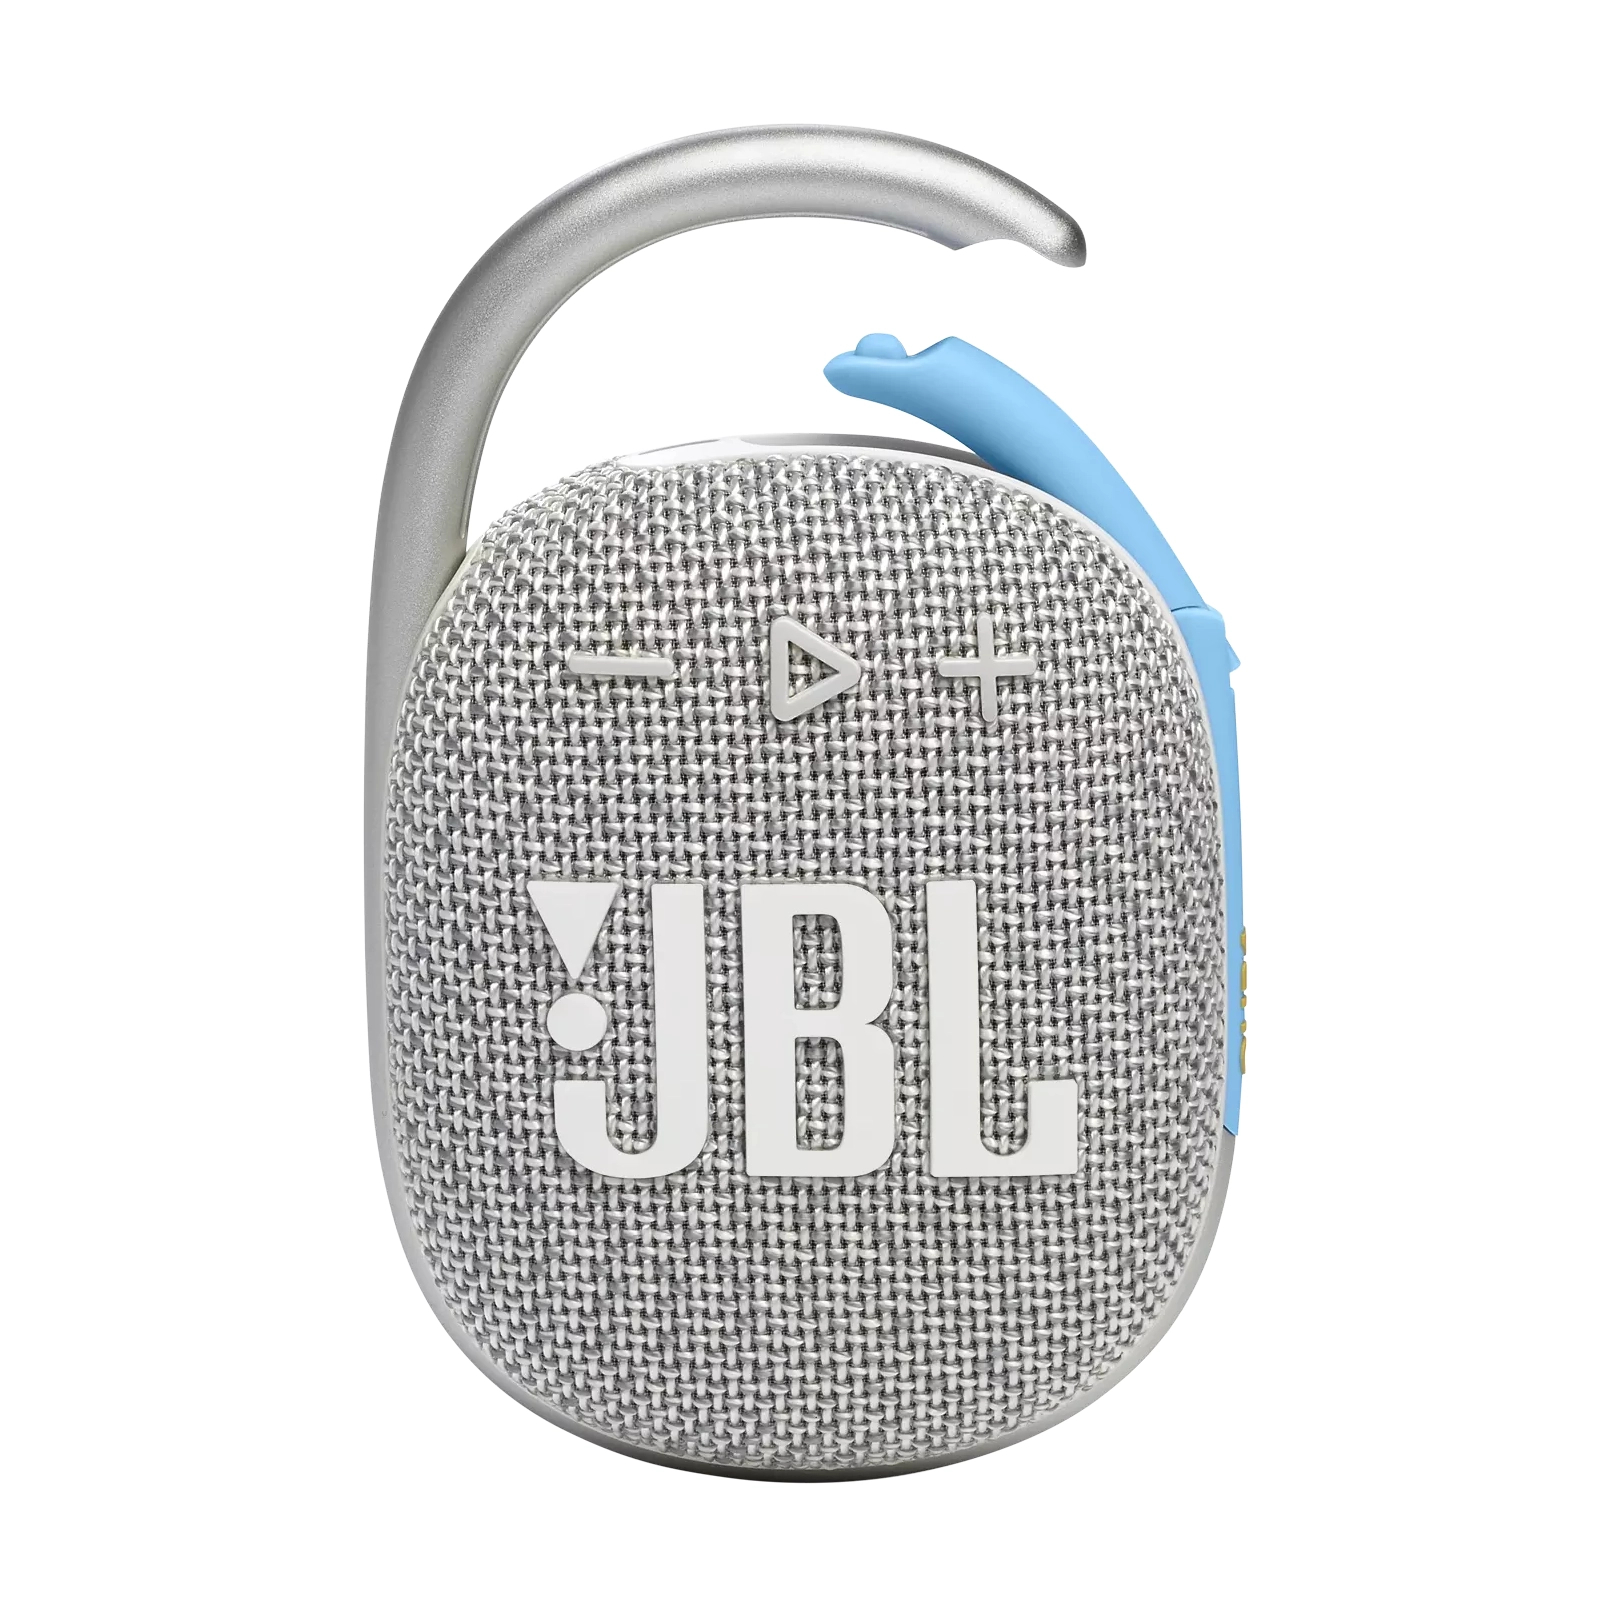 Акустическая система JBL Clip 4 Eco Green (JBLCLIP4ECOGRN) изображение 2